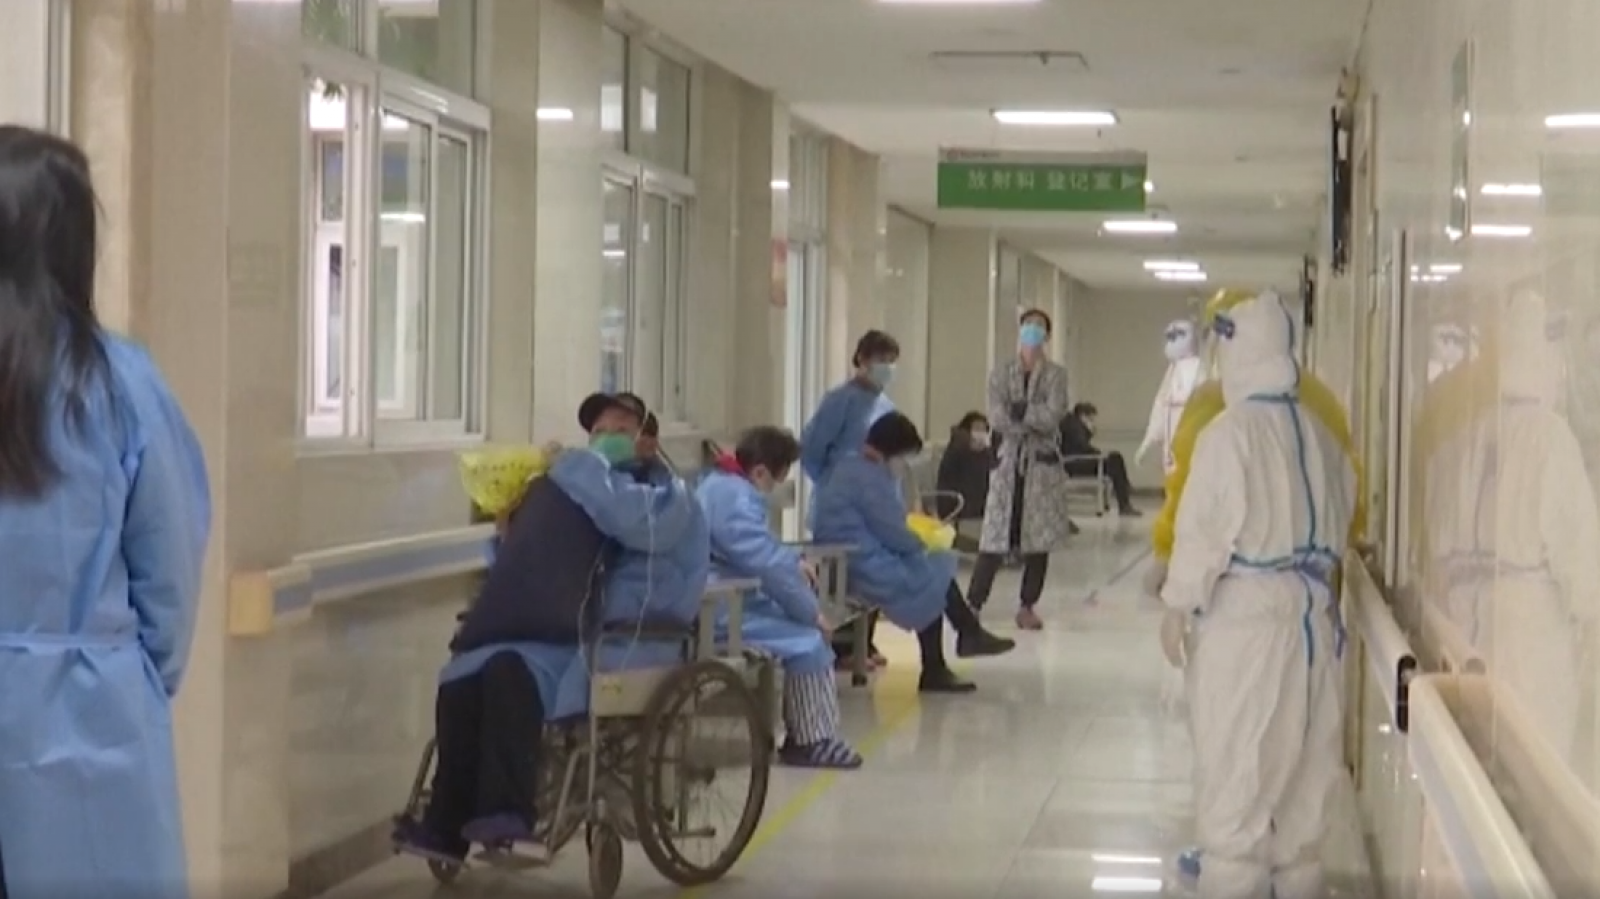 Coronavirus: El Gobierno chino intenta mandar un mensaje tranquilizador y asegura que hay más curados que fallecidos - RTVE.es